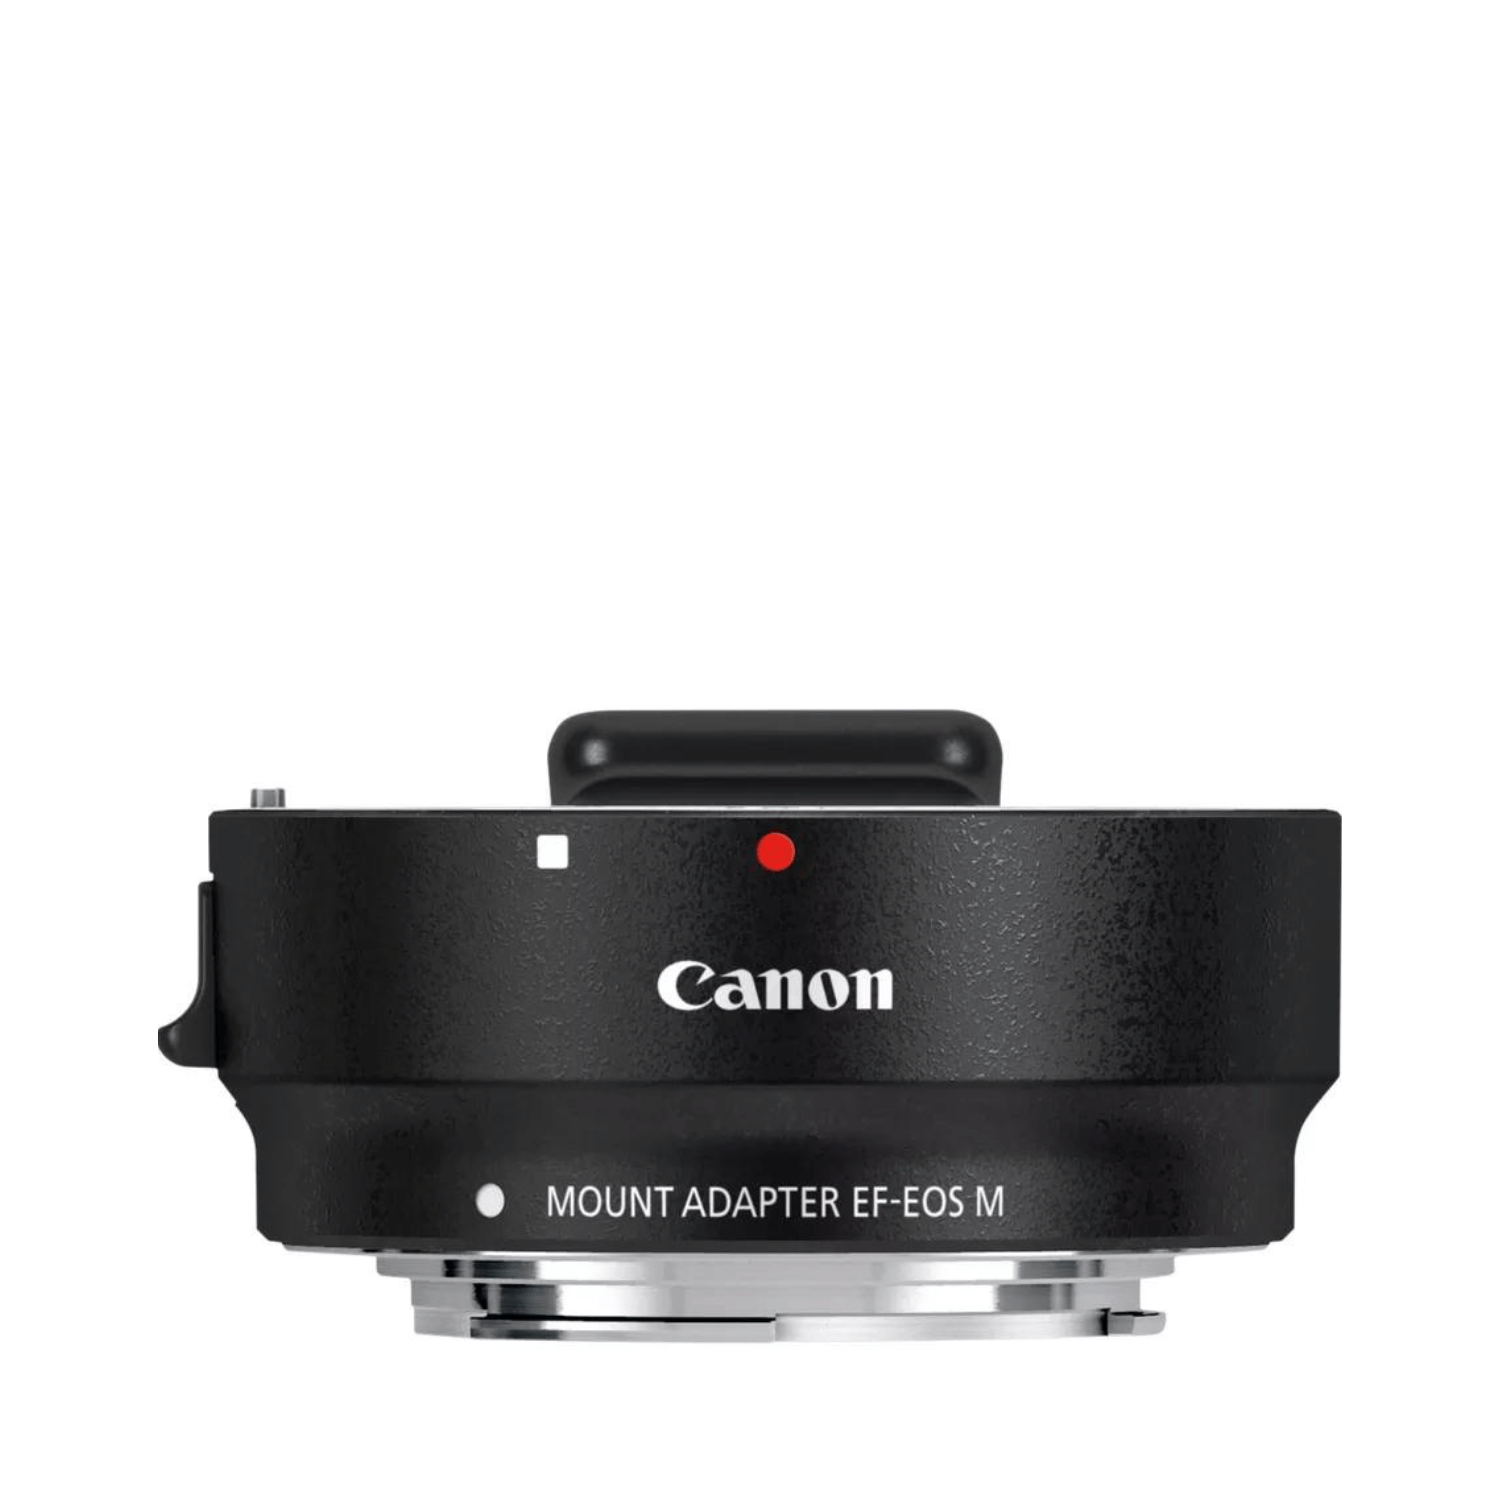 Canon EF Mount Adapter EF-EOS M -Gar. Canon Italia- Cine Sud è 48 anni sul mercato!